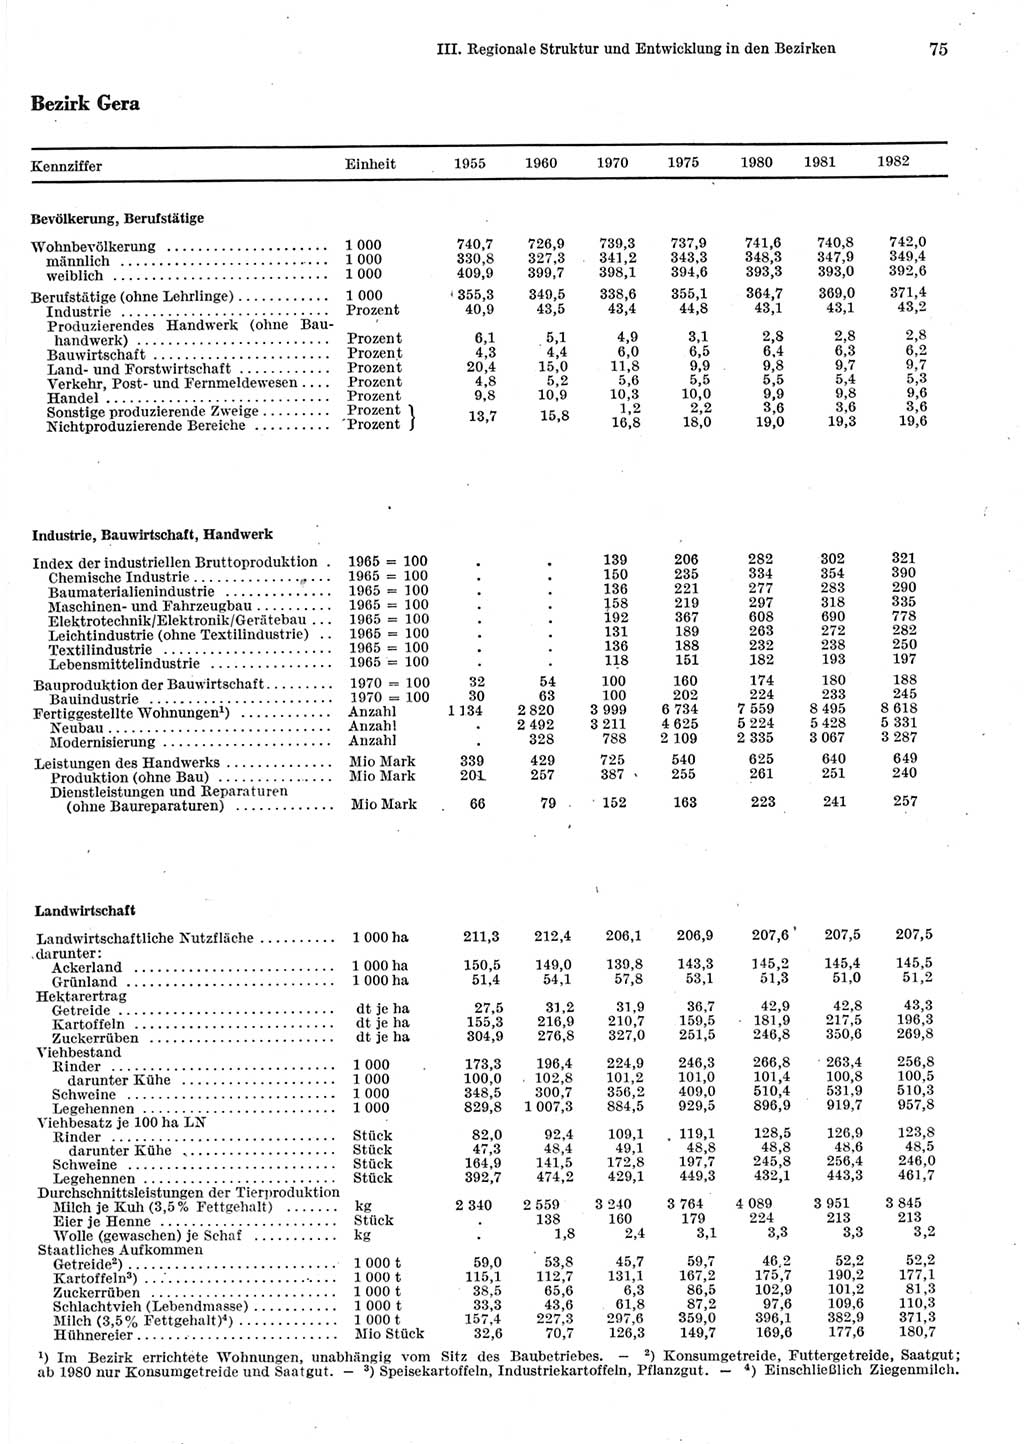 Statistisches Jahrbuch der Deutschen Demokratischen Republik (DDR) 1983, Seite 75 (Stat. Jb. DDR 1983, S. 75)